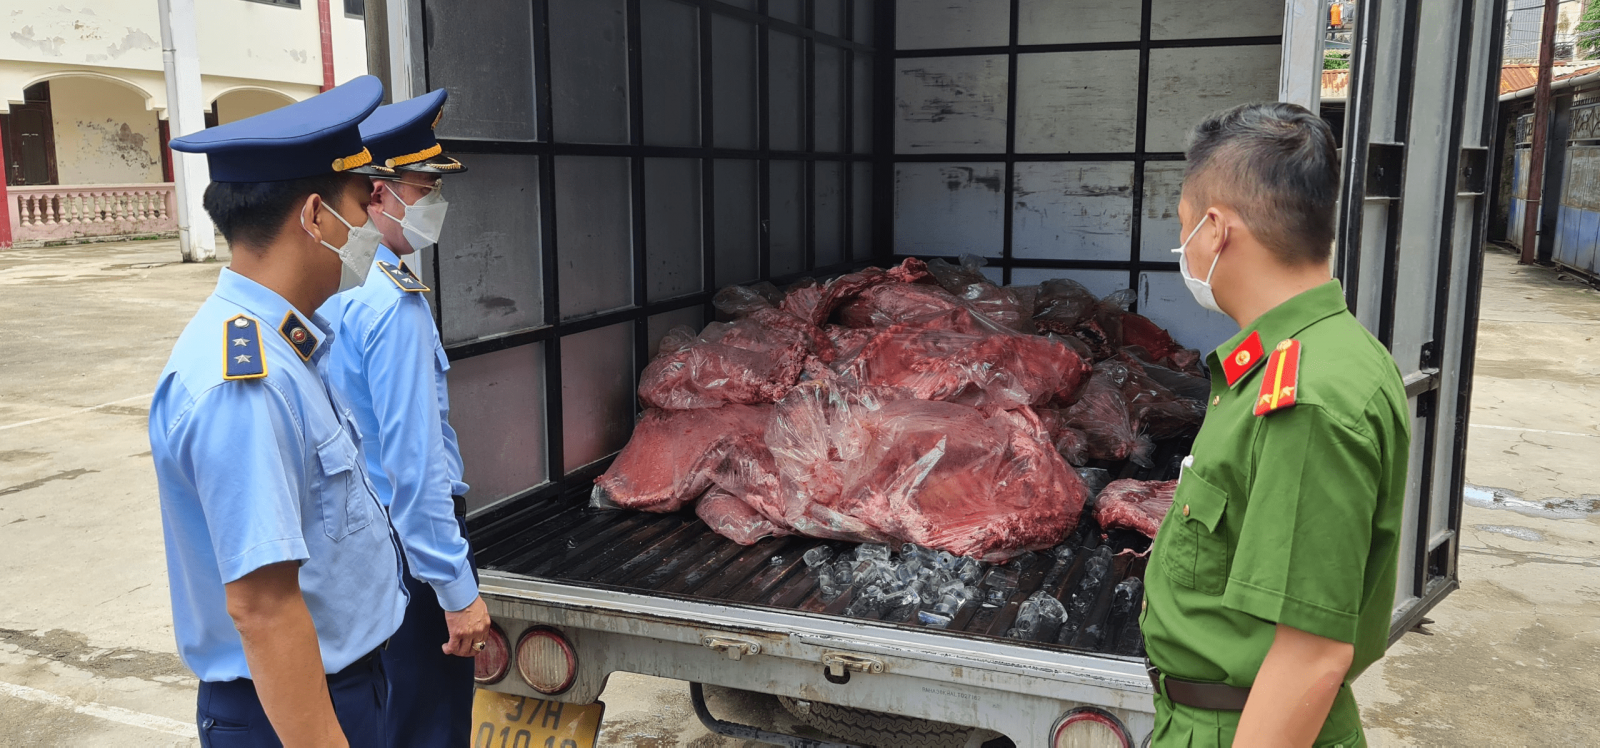 Kinh hoàng: 650kg thịt sườn lợn thối sắp tuồn ra thị trường bị thu giữ ở Nghệ An - Ảnh 1.